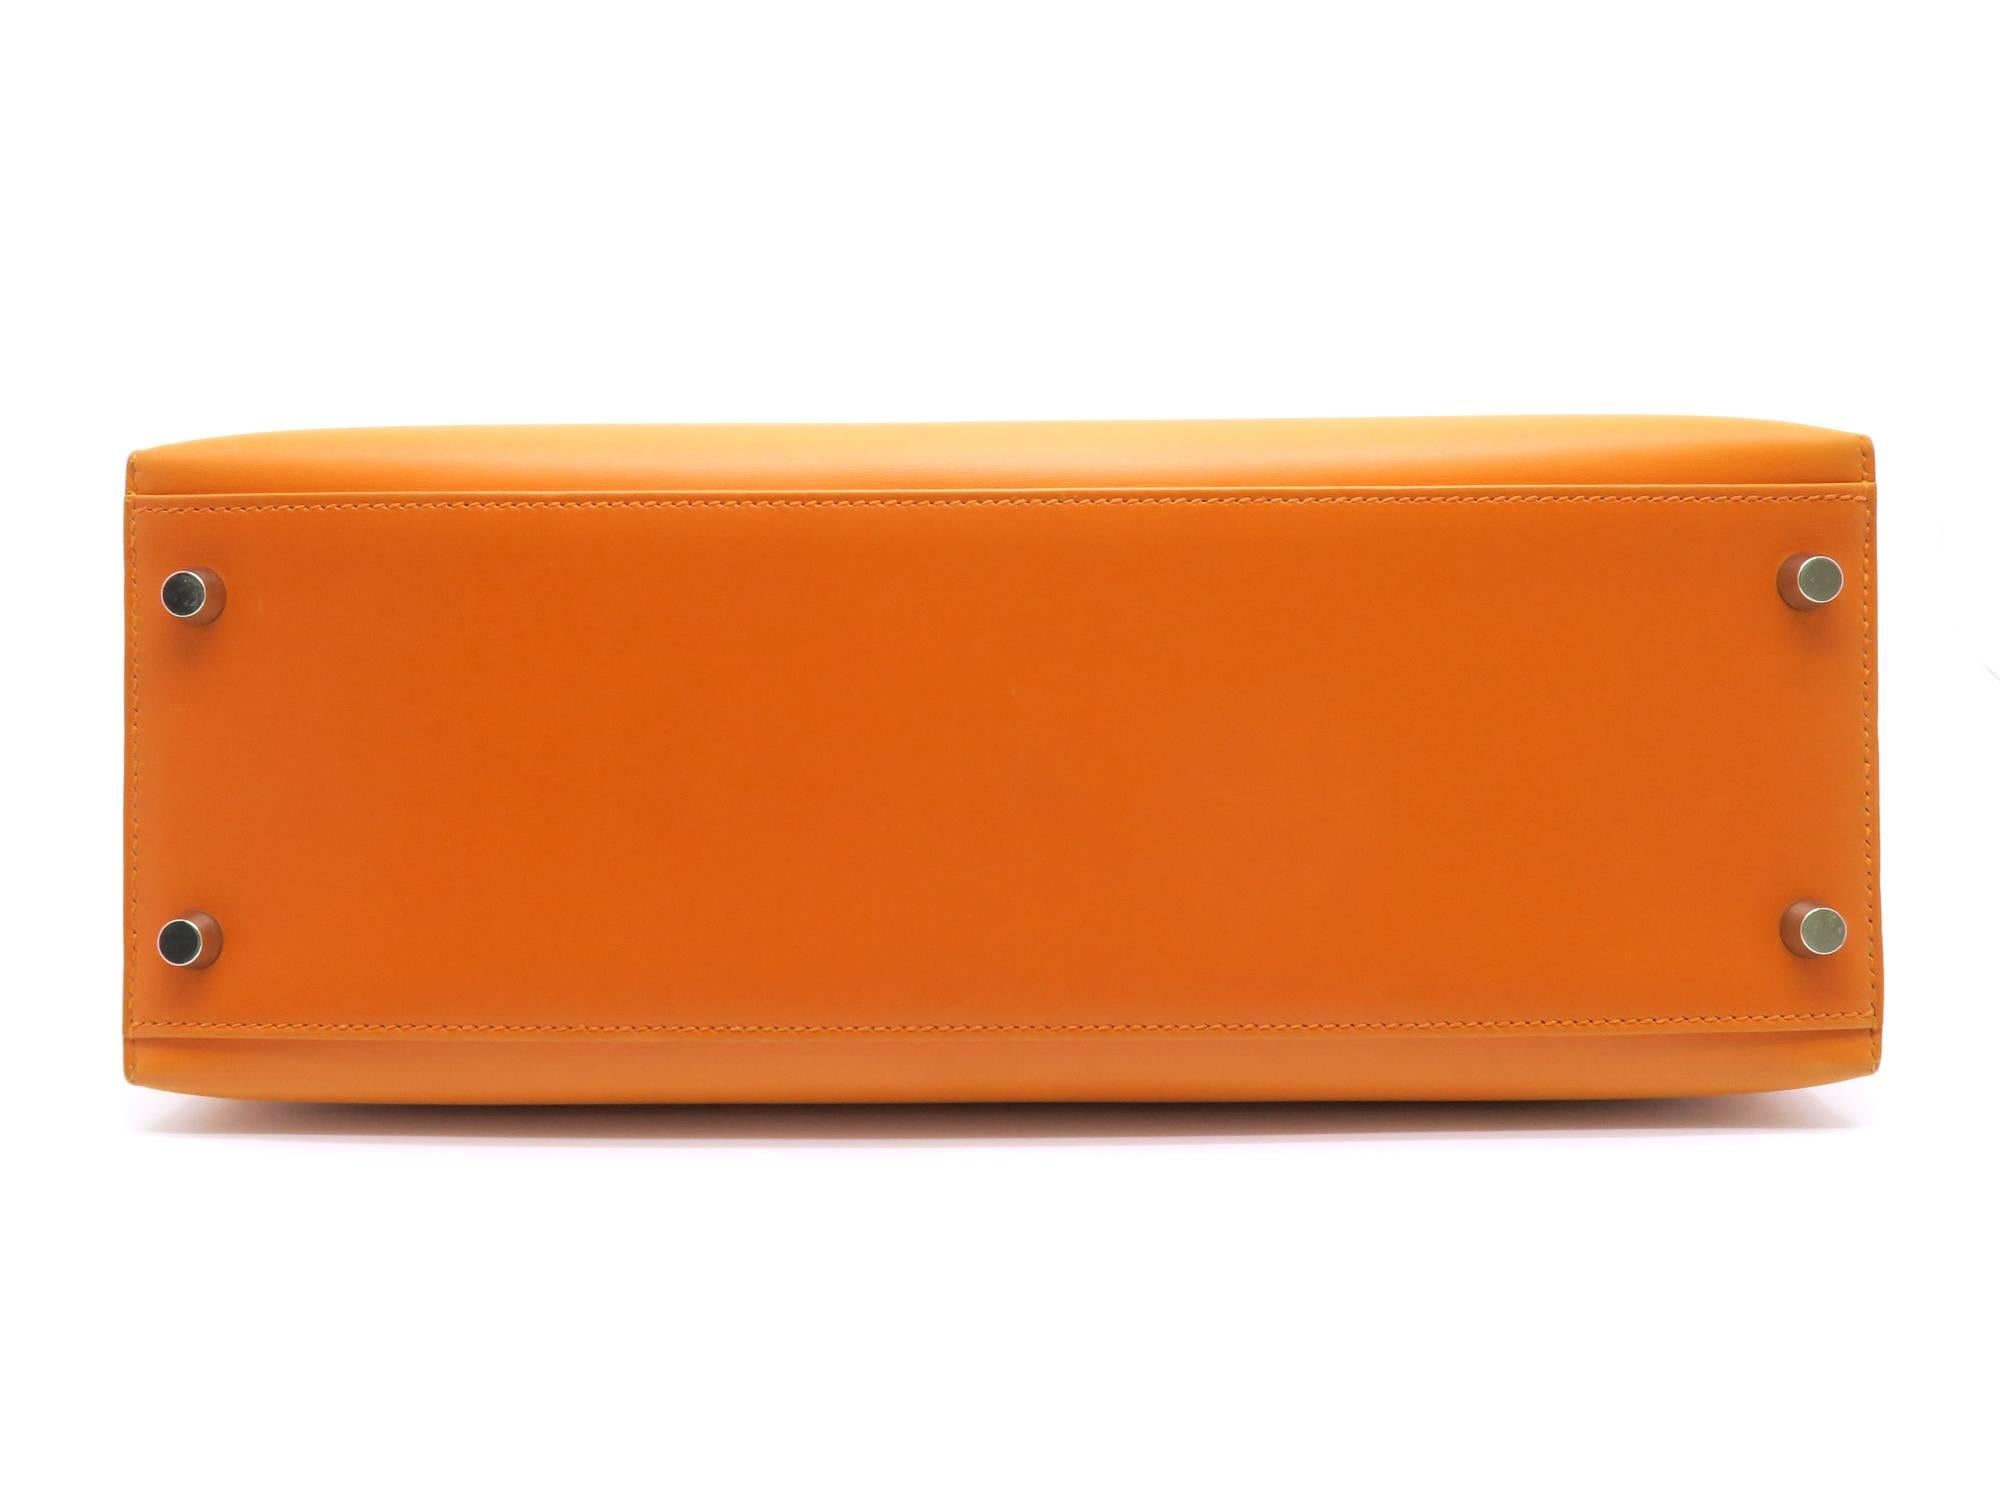 purse in orange box